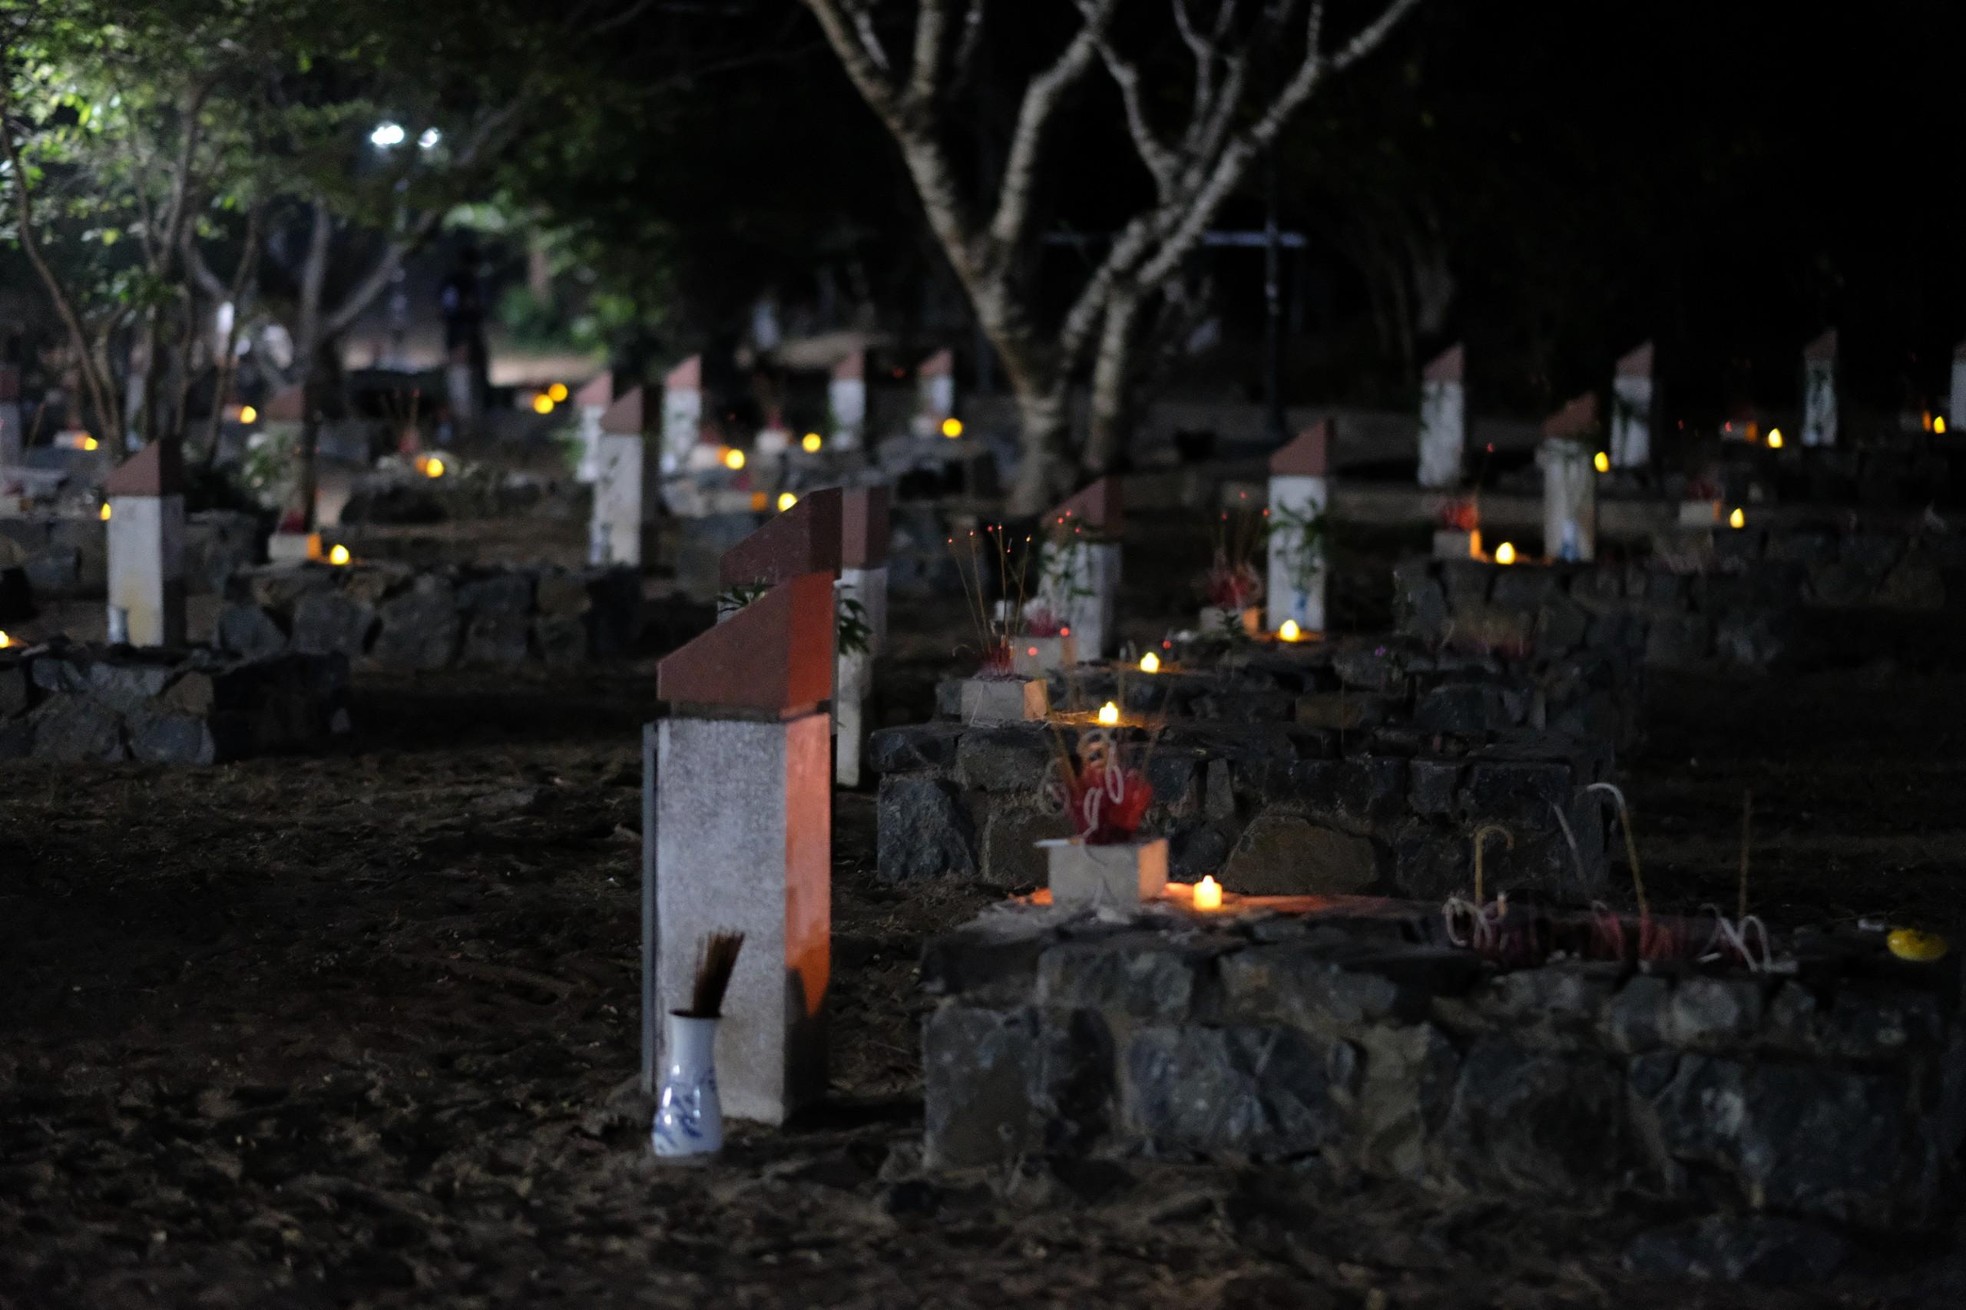 Xúc động hình ảnh những ngọn nến trong đêm ở Nghĩa trang Hàng Dương ảnh 11